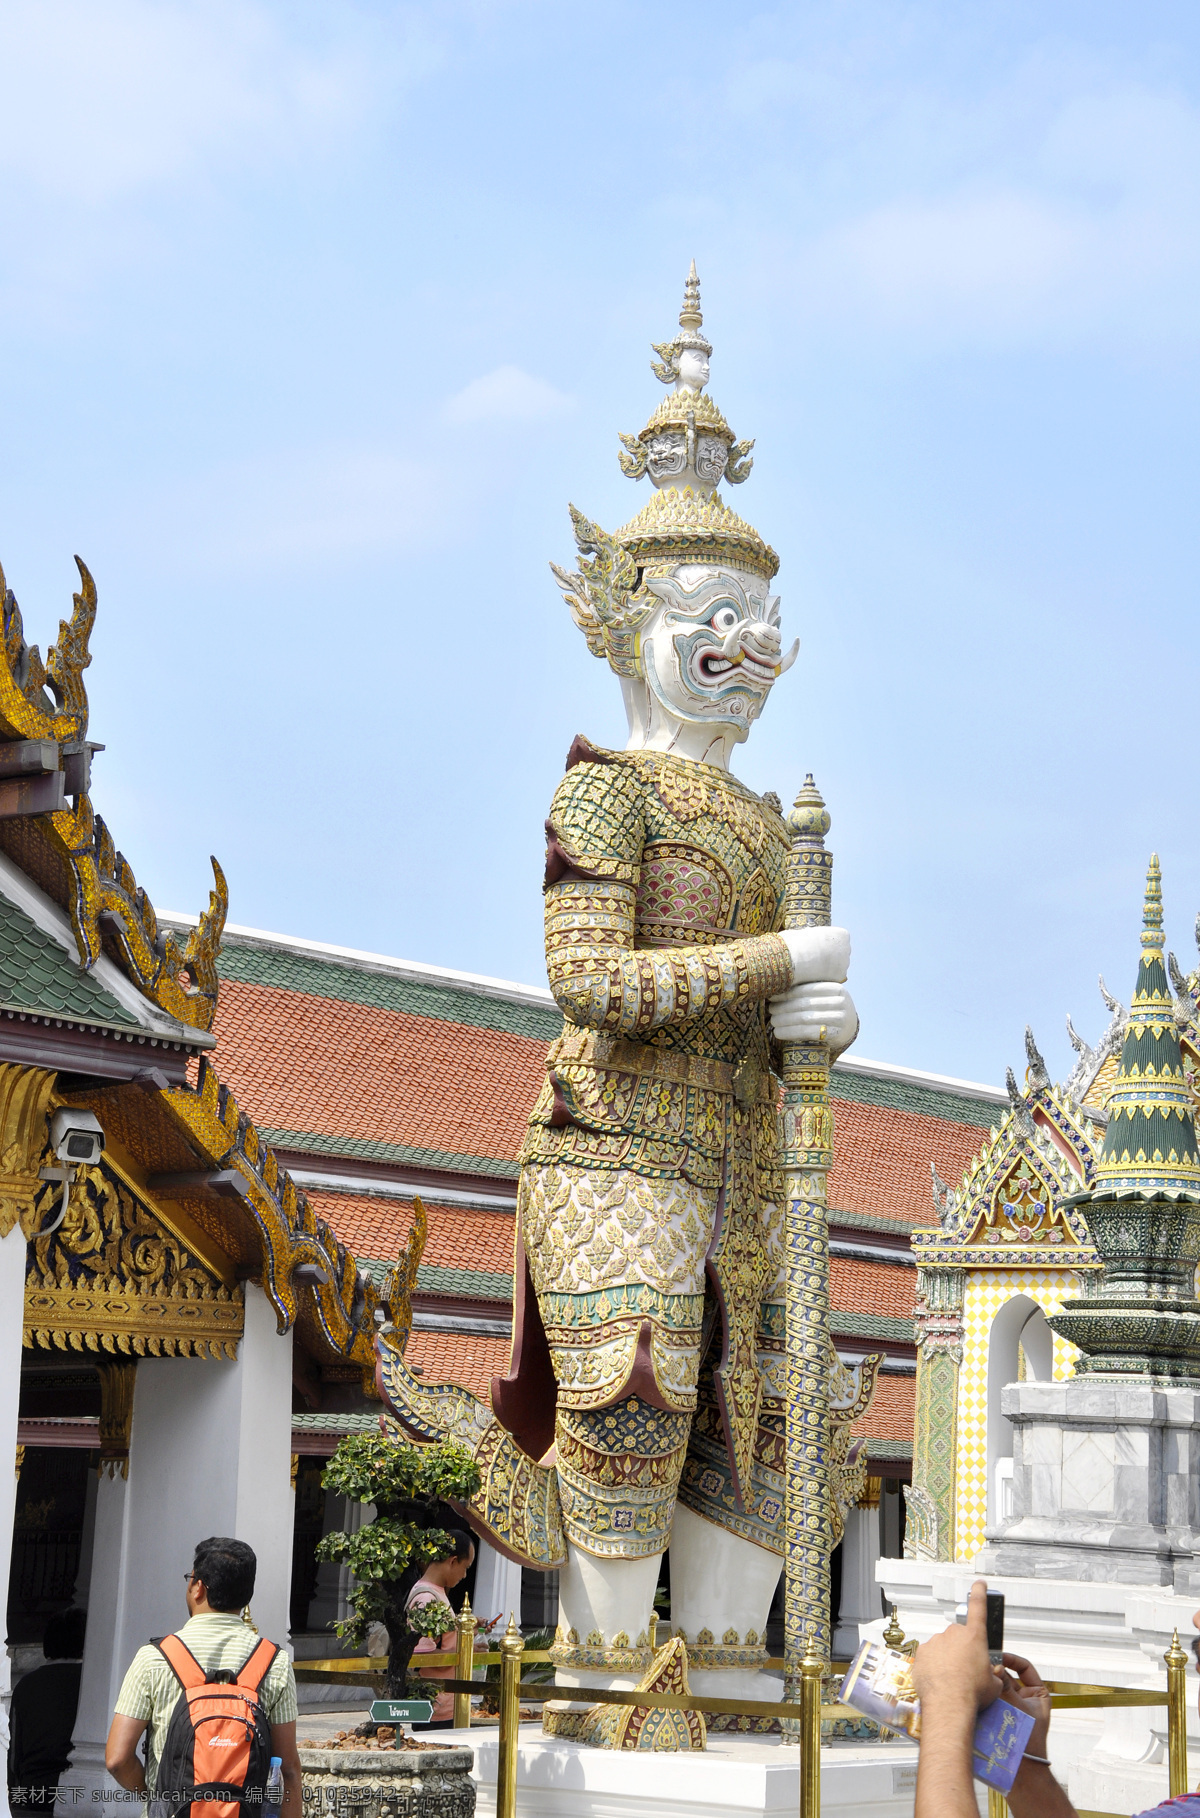 泰国建筑 南亚风情 寺庙雕像 泰国传统文化 泰国标志雕像 雕塑 雕刻 雕像 国外旅游 旅游摄影